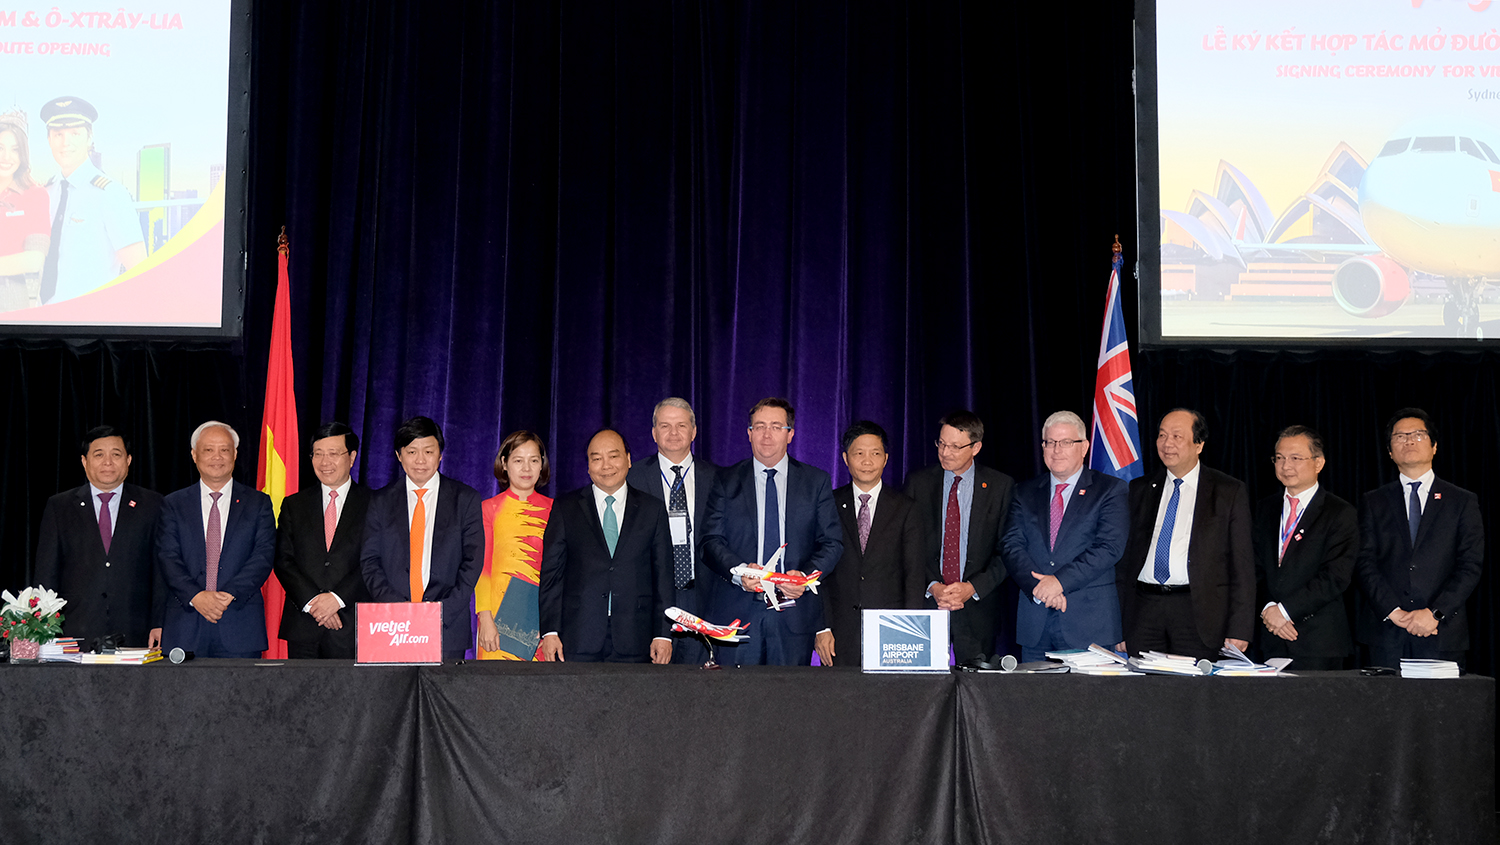 Thủ tướng Chính phủ Nguyễn Xuân Phúc và lãnh đạo cấp cao của Việt Nam và Australia chứng kiến sự kiện công bố thoả thuận hợp tác mở đường bay thẳng Tp.HCM – Tp.Brisbane tại Diễn đàn doanh nghiệp Việt Nam – Australia tại Tp. Sydney.